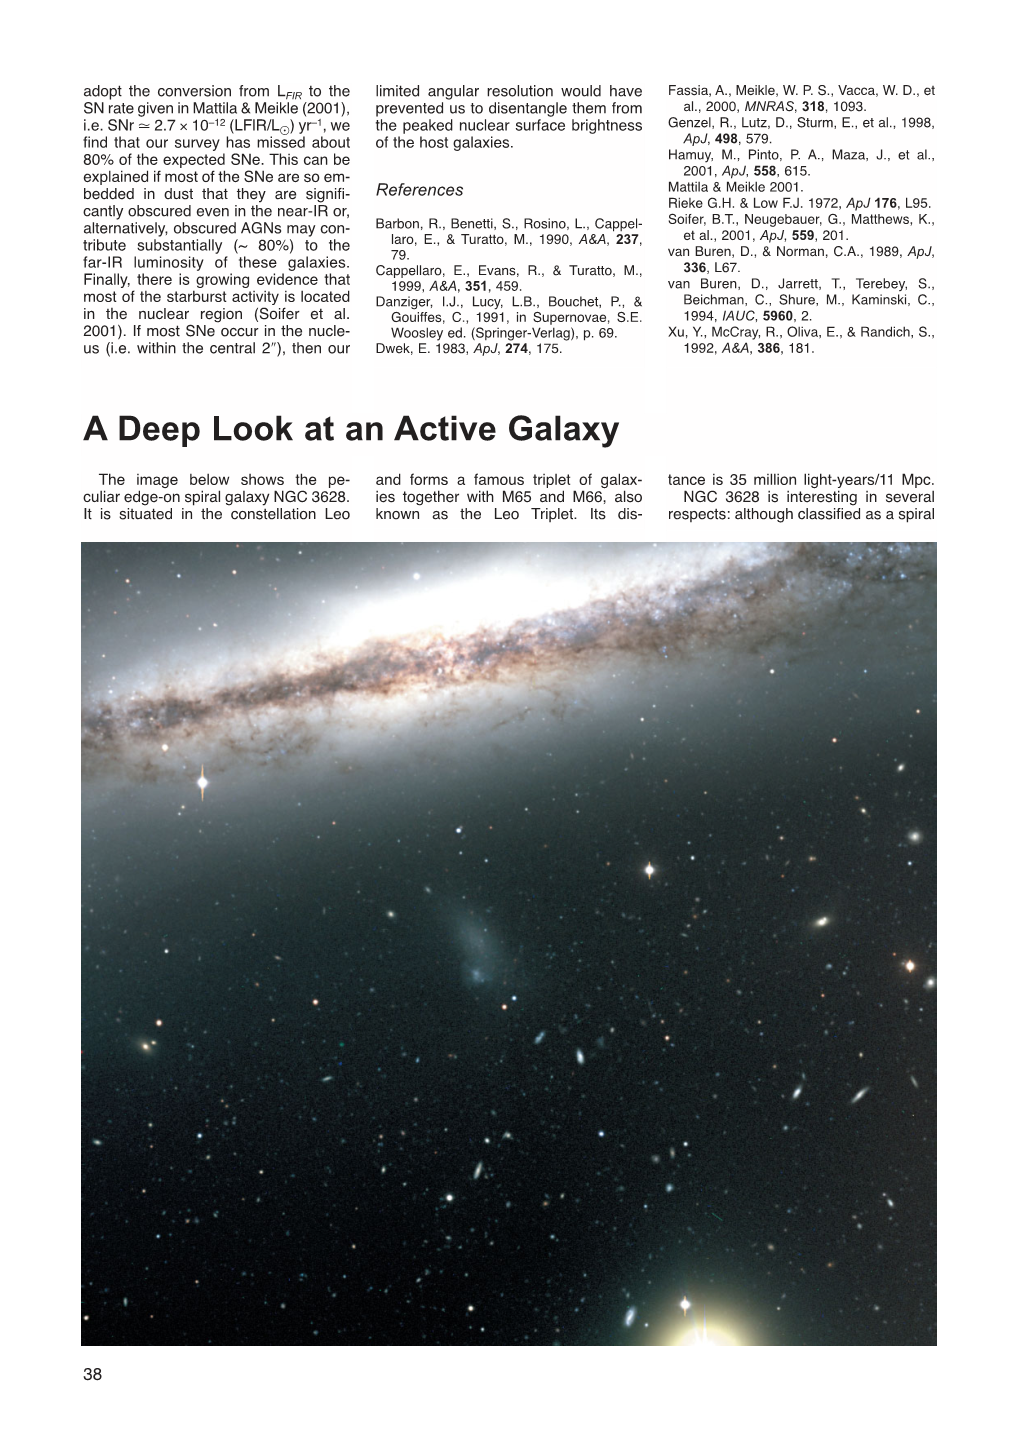 A Deep Look at an Active Galaxy